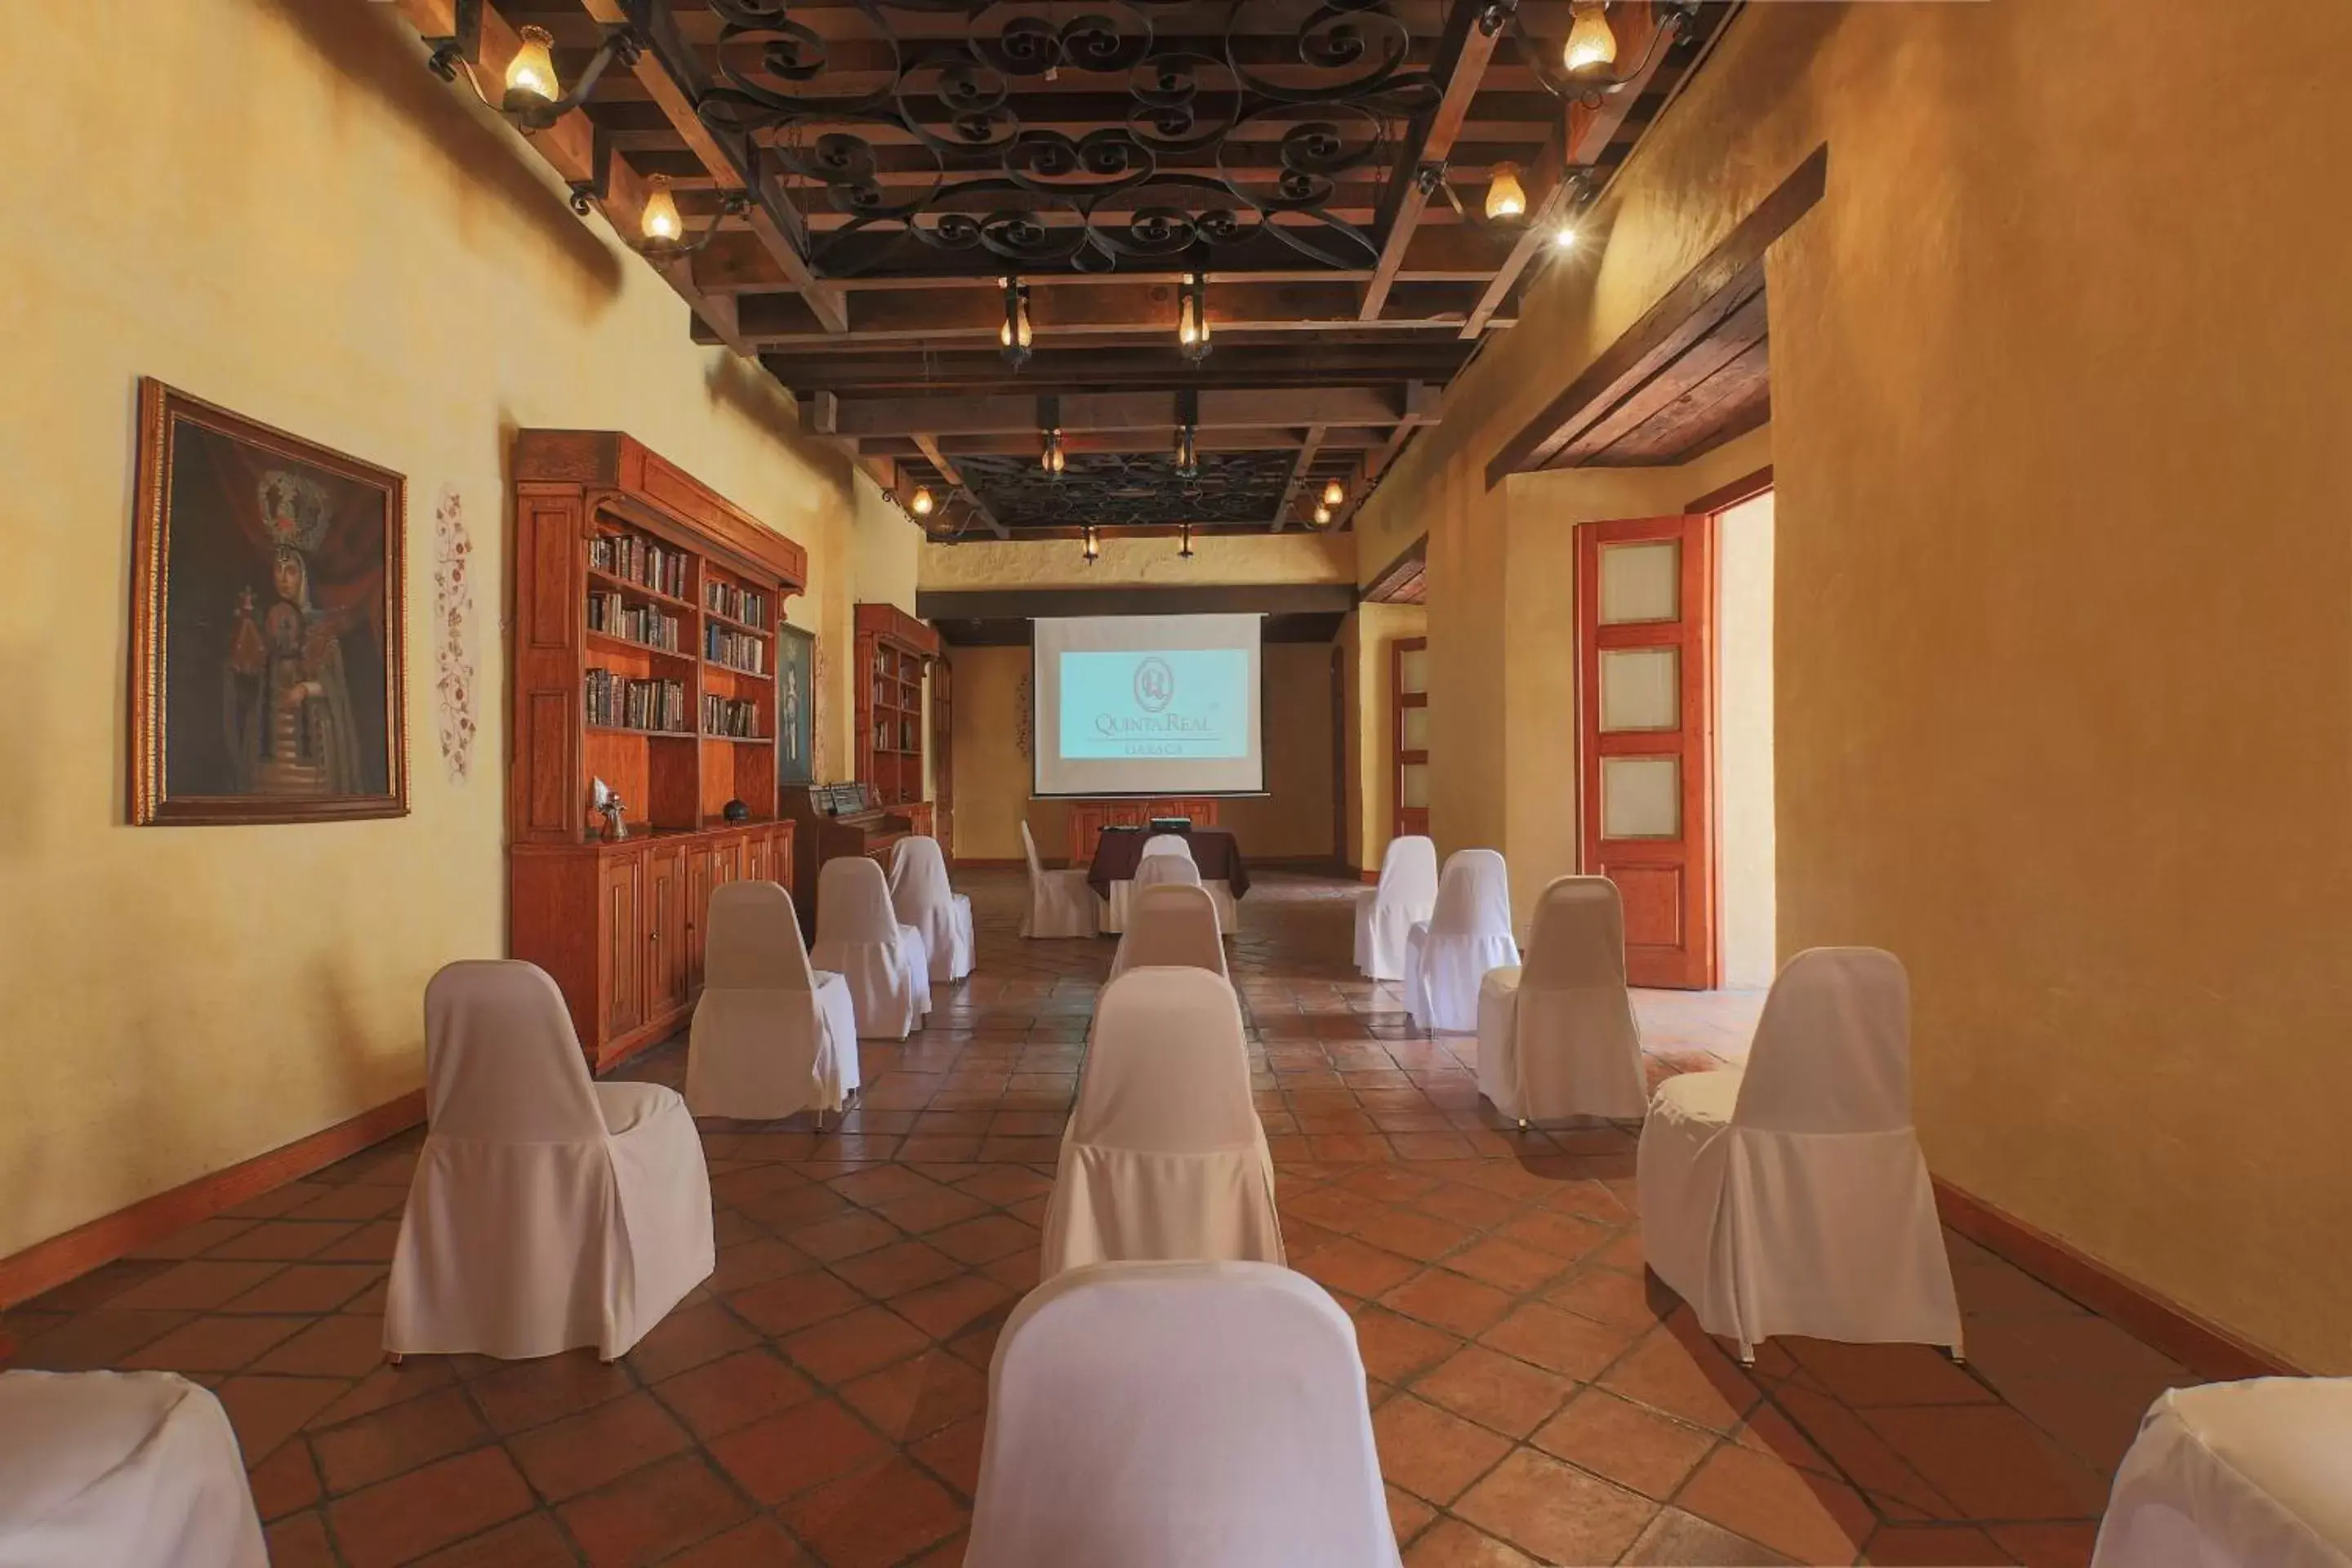 Banquet/Function facilities, Banquet Facilities in Quinta Real Oaxaca